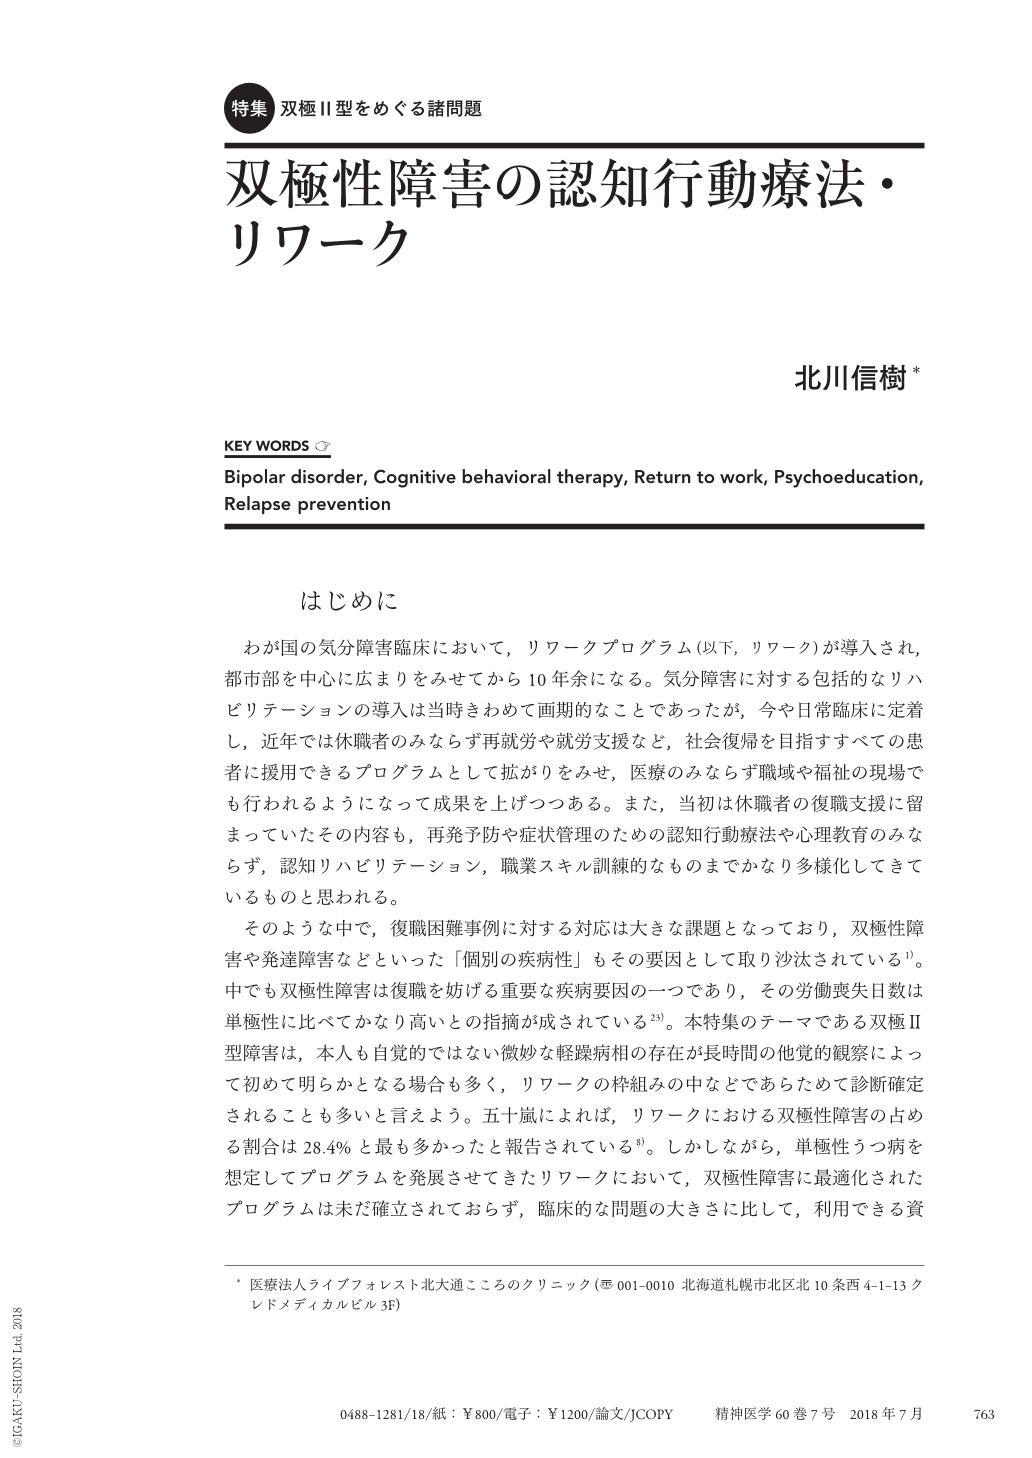 双極性障害の認知行動療法・リワーク (精神医学 60巻7号) | 医書.jp